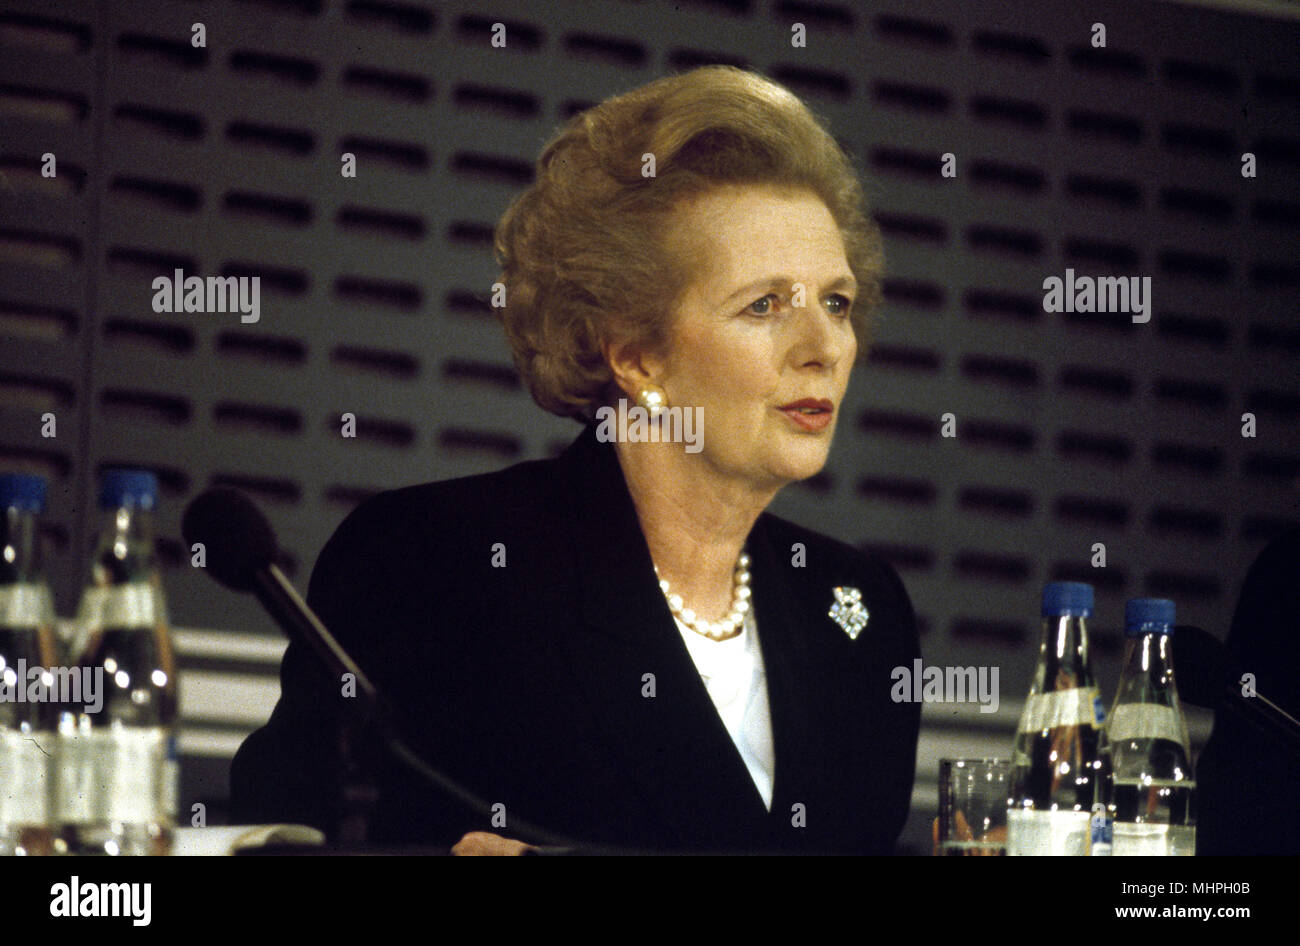 Margaret Thatcher, el Primer Ministro británico, en una conferencia de prensa en Londres, poco después de una visita importante por Mikhail Gorbachev, Presidente ruso. Fecha: circa 1984 Foto de stock